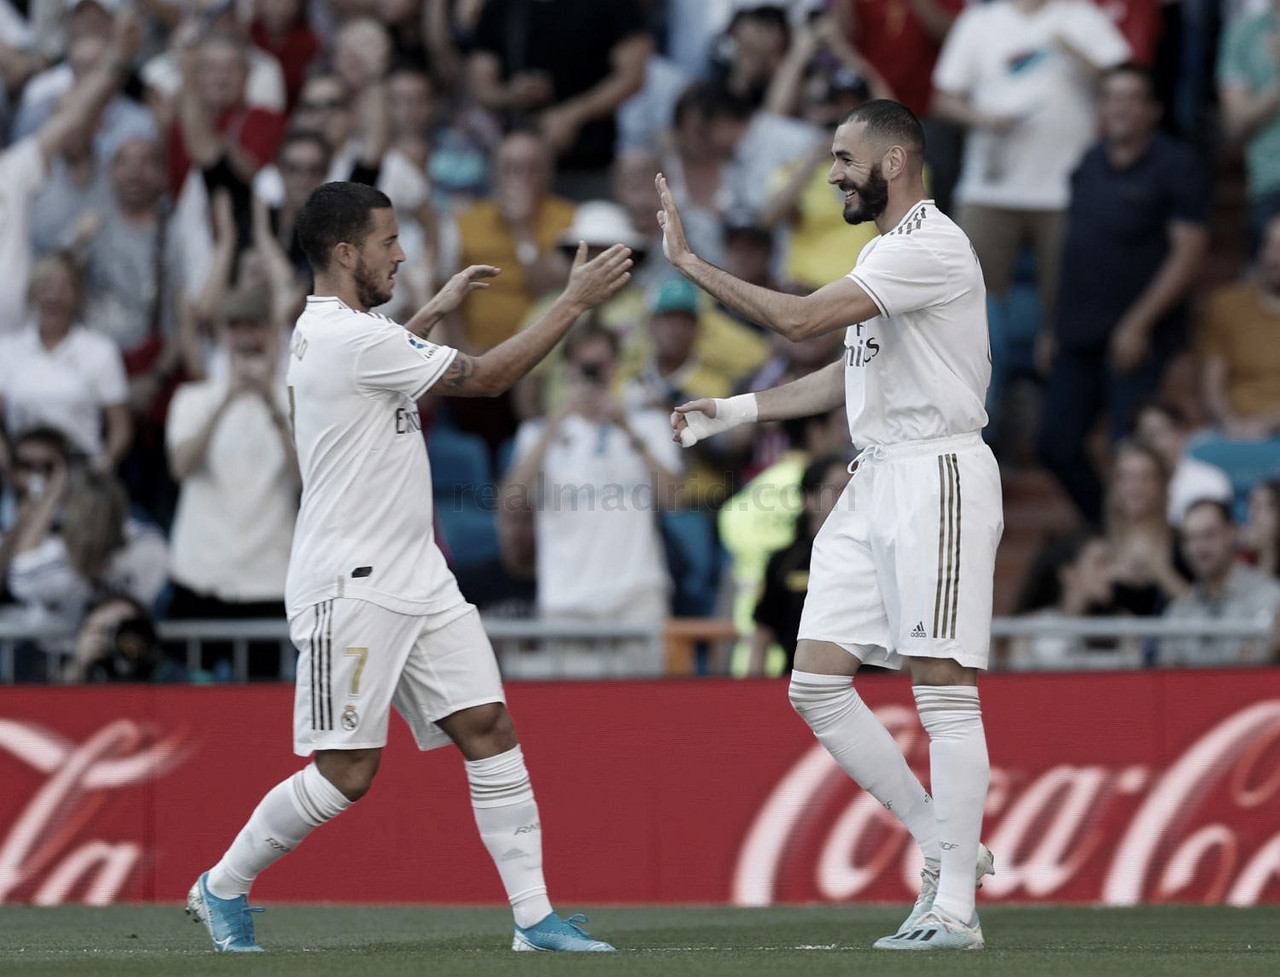 Guía VAVEL Real Madrid 2020/21: Benzema & Hazard, el tándem que todavía ilusiona